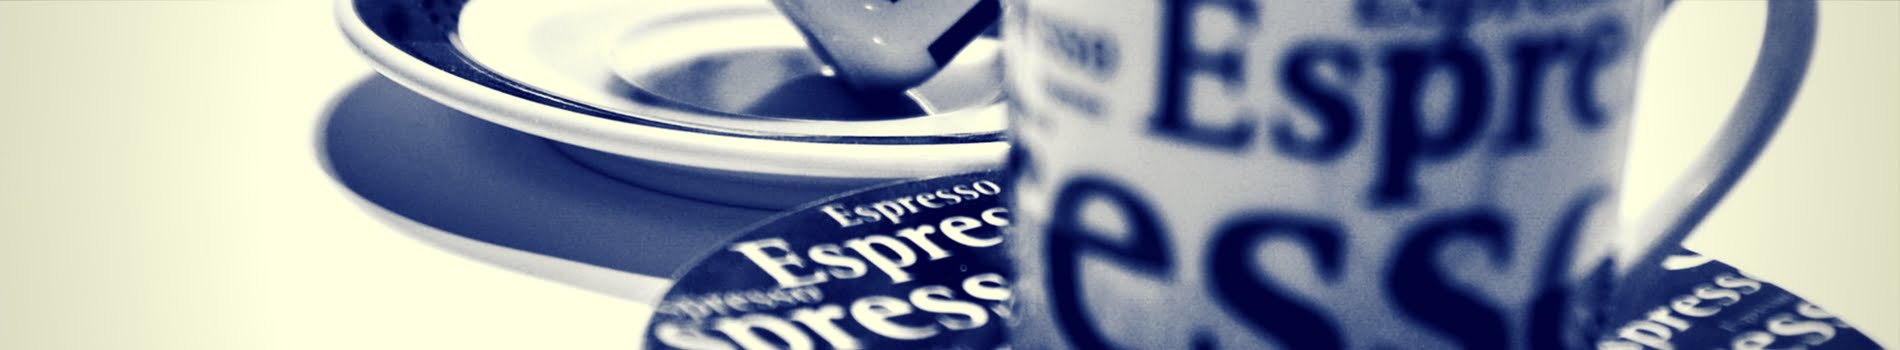 Espresso Coffee Addiction and Espreson